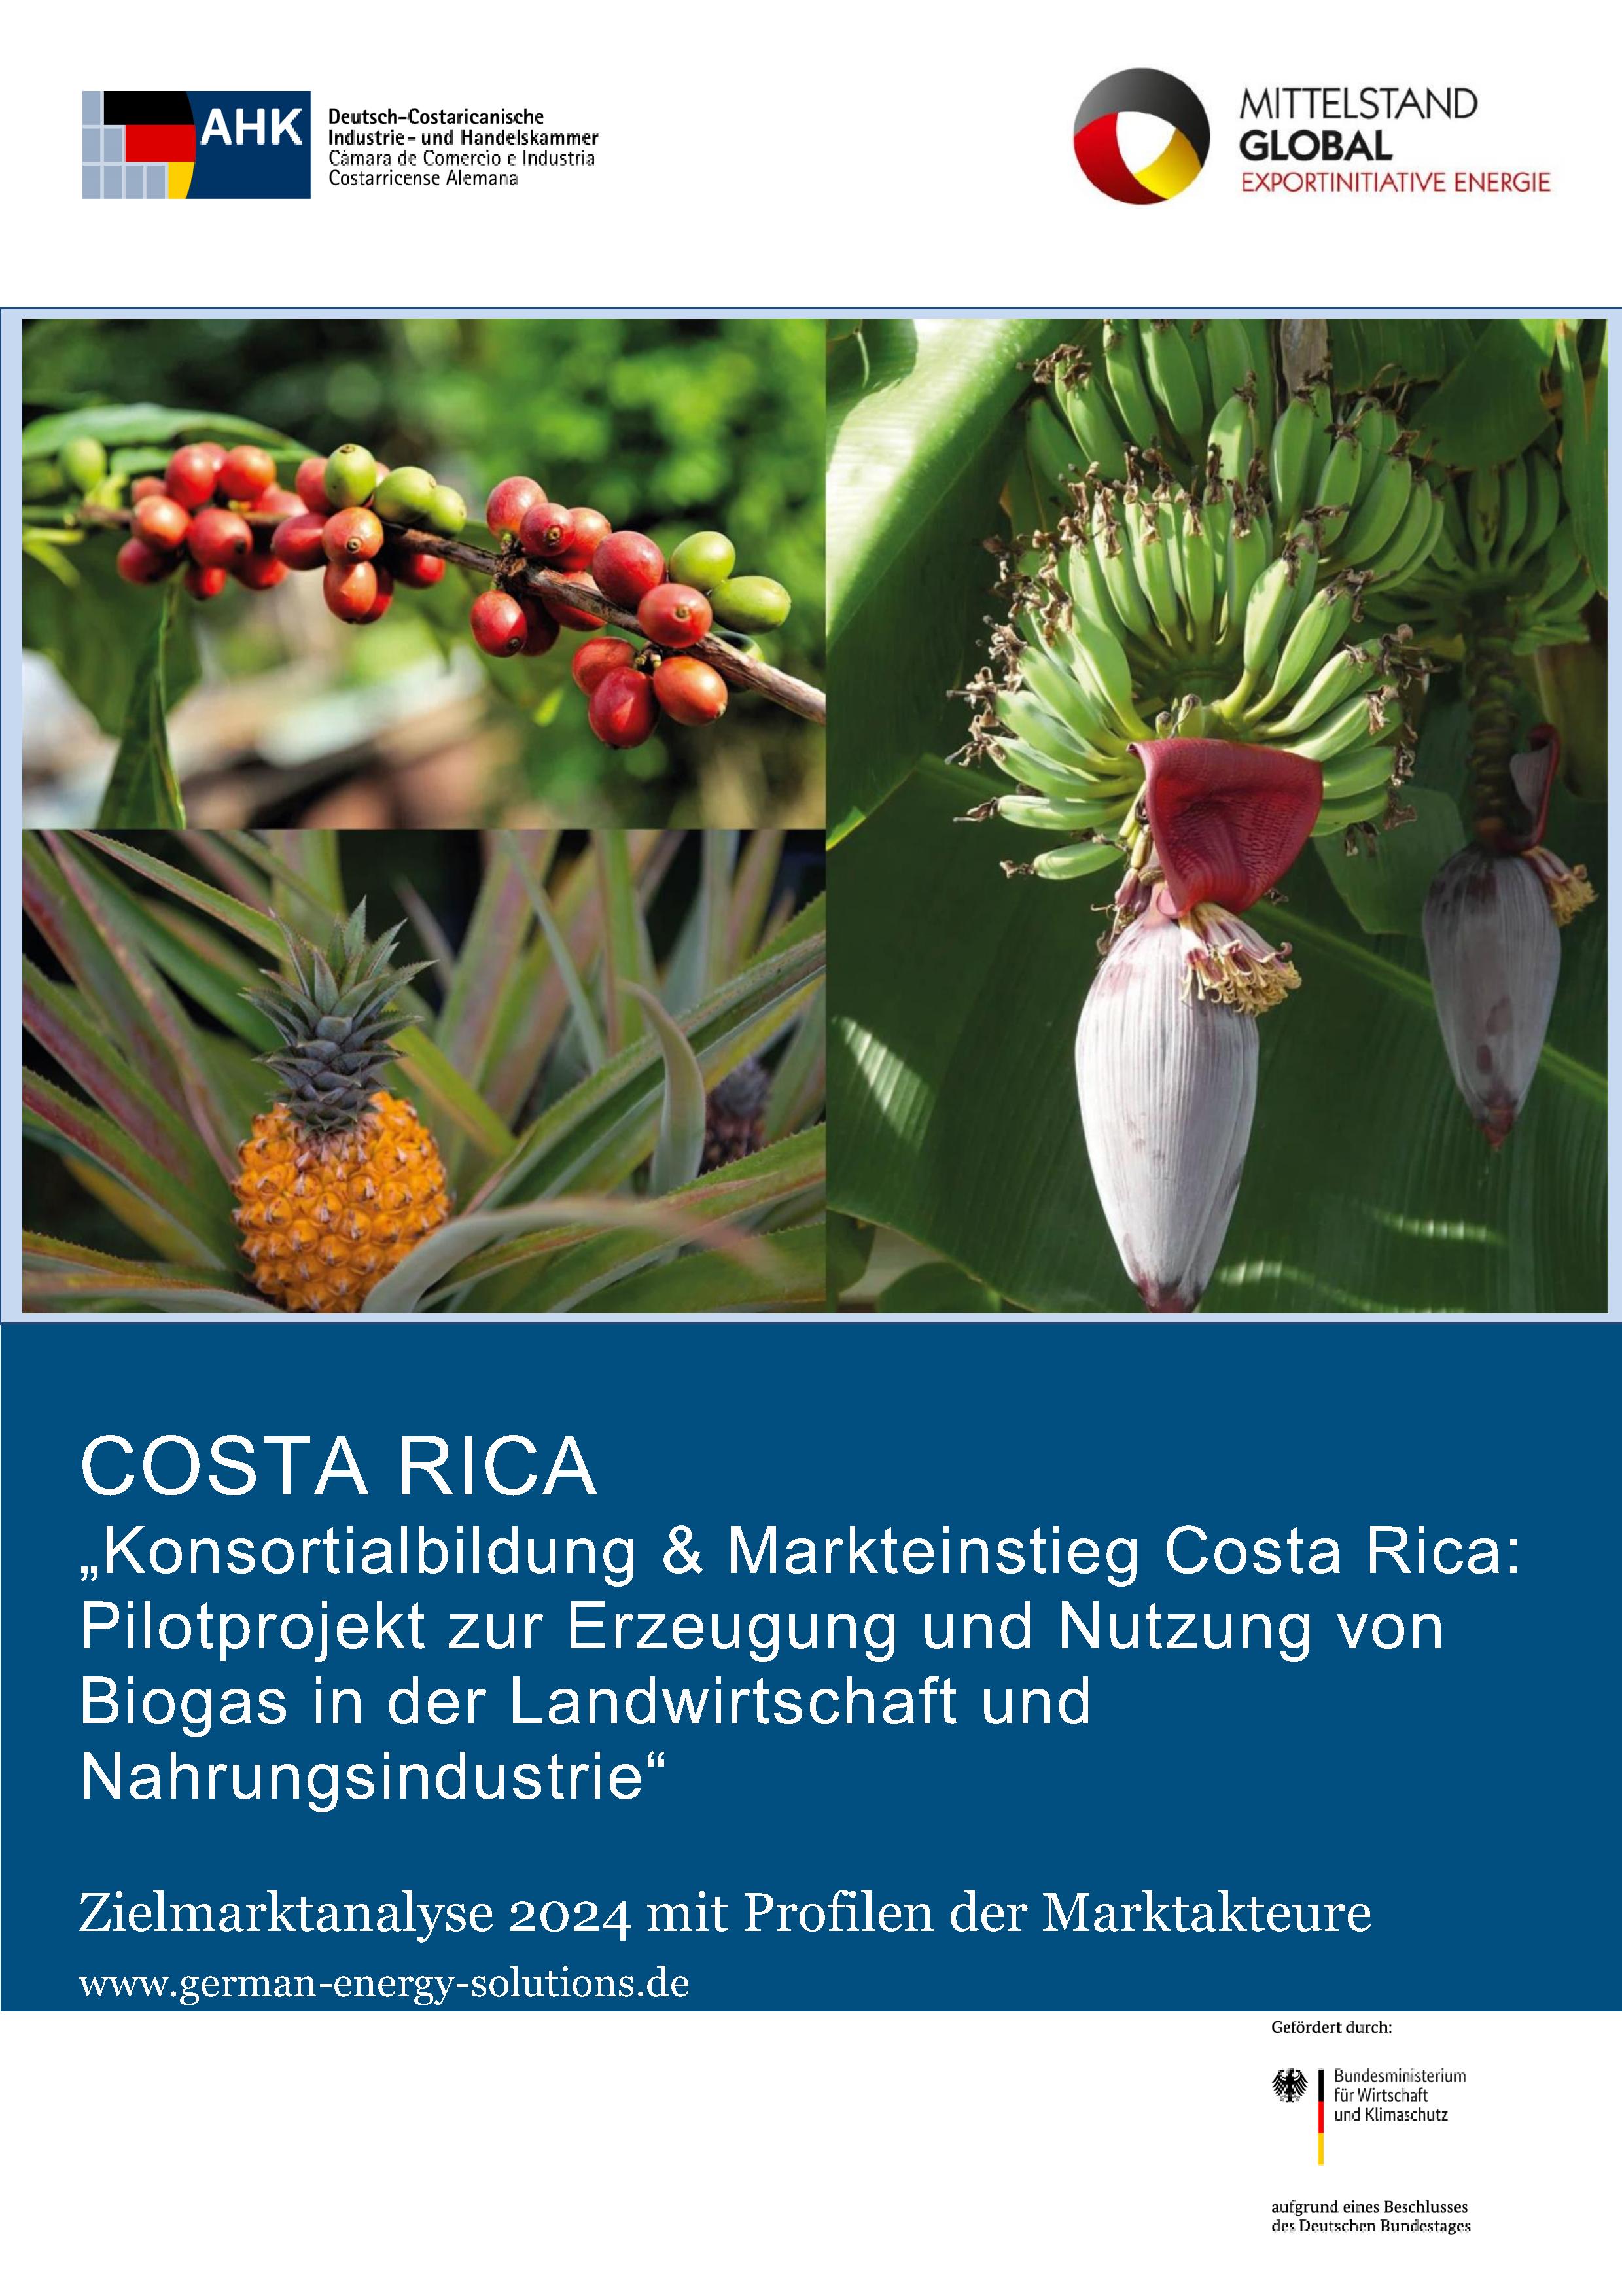 Pilotprojekt zur Erzeugung und Nutzung von Biogas in der Landwirtschaft und Nahrungsindustrie in Costa Rica